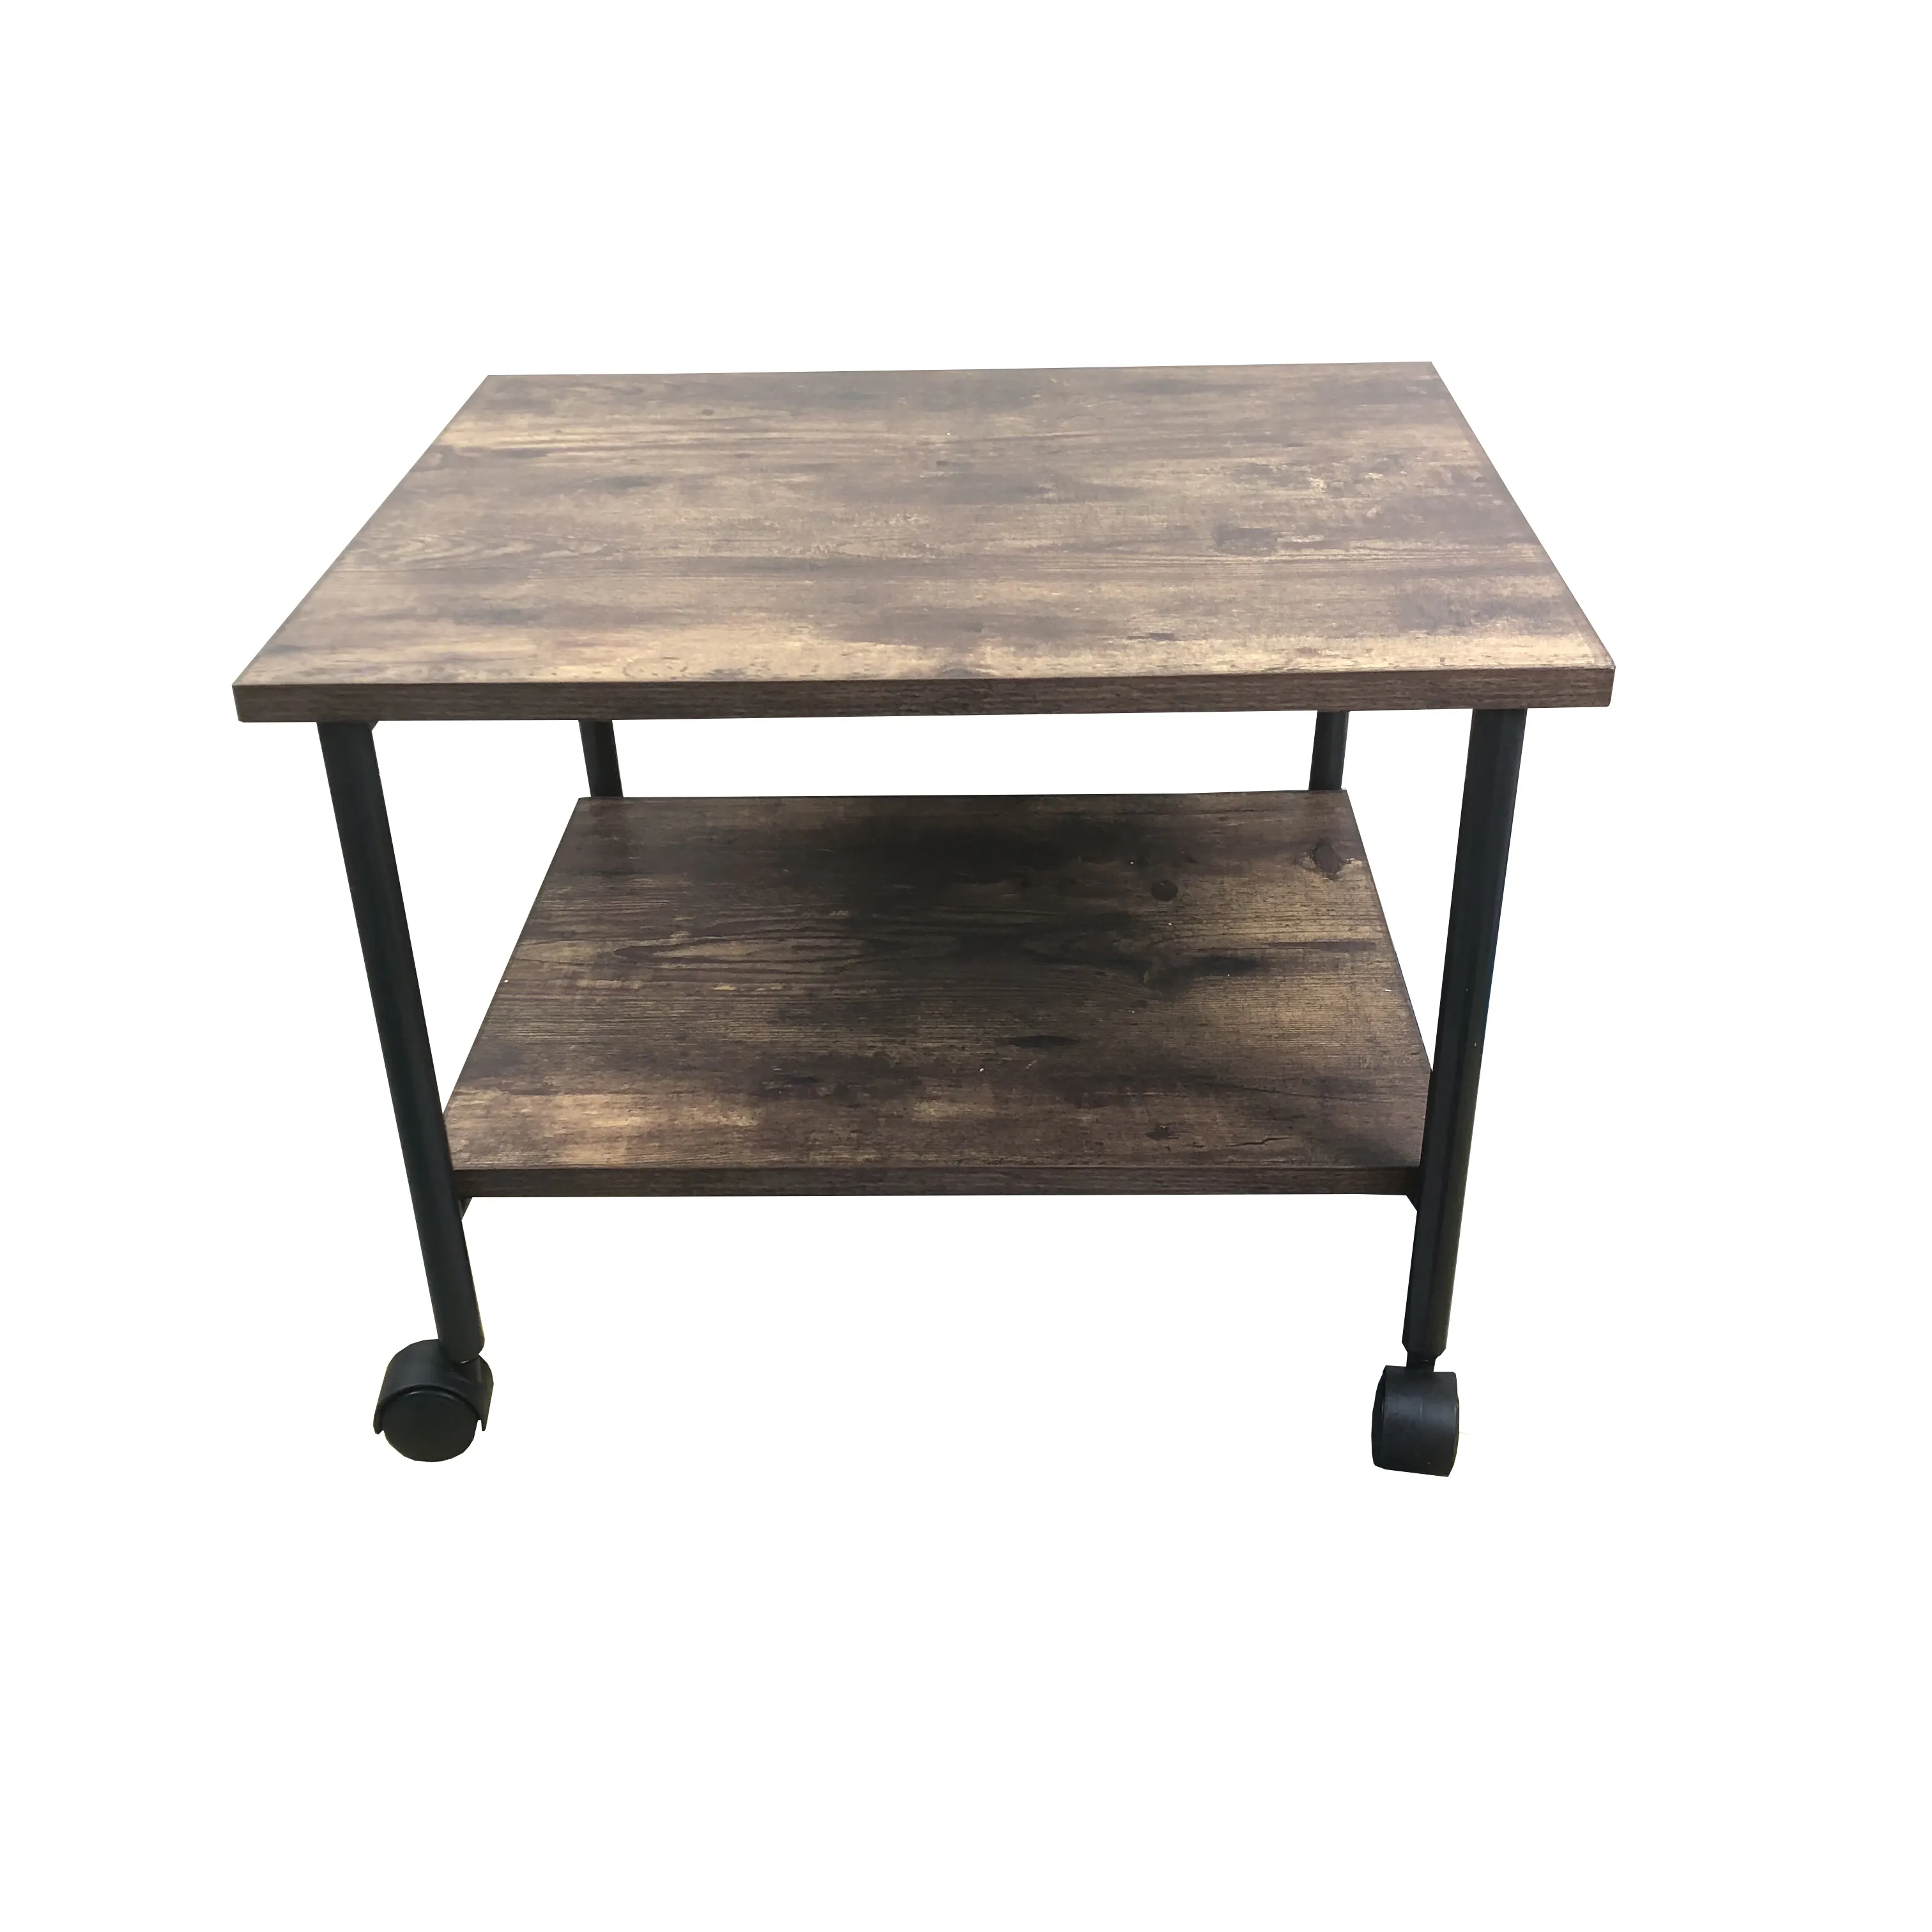 בית משרד כפרי עץ 2 tiers מעתיק סורק מתגלגל עגלת תחת מארגן שולחן שולחן מדפסת stand